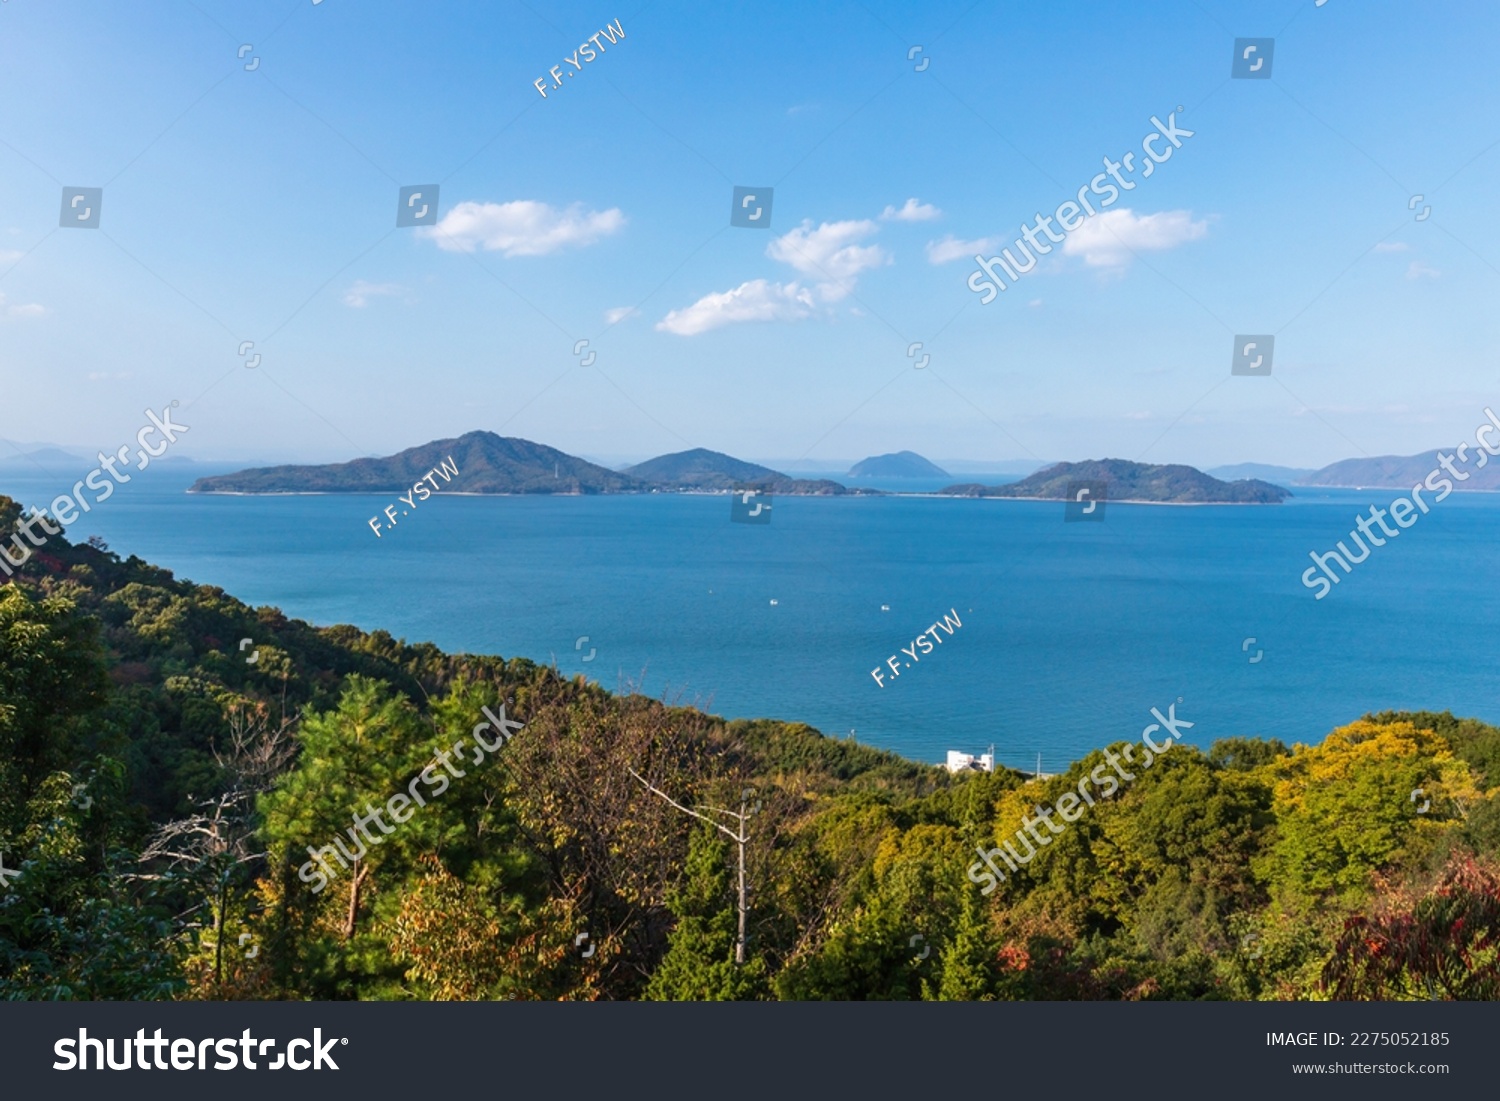 Landscape of islands on the seto inland sea , view from Mt. bakuchi at shonai peninsula , mitoyo city, kagawa, shikoku, japan #2275052185